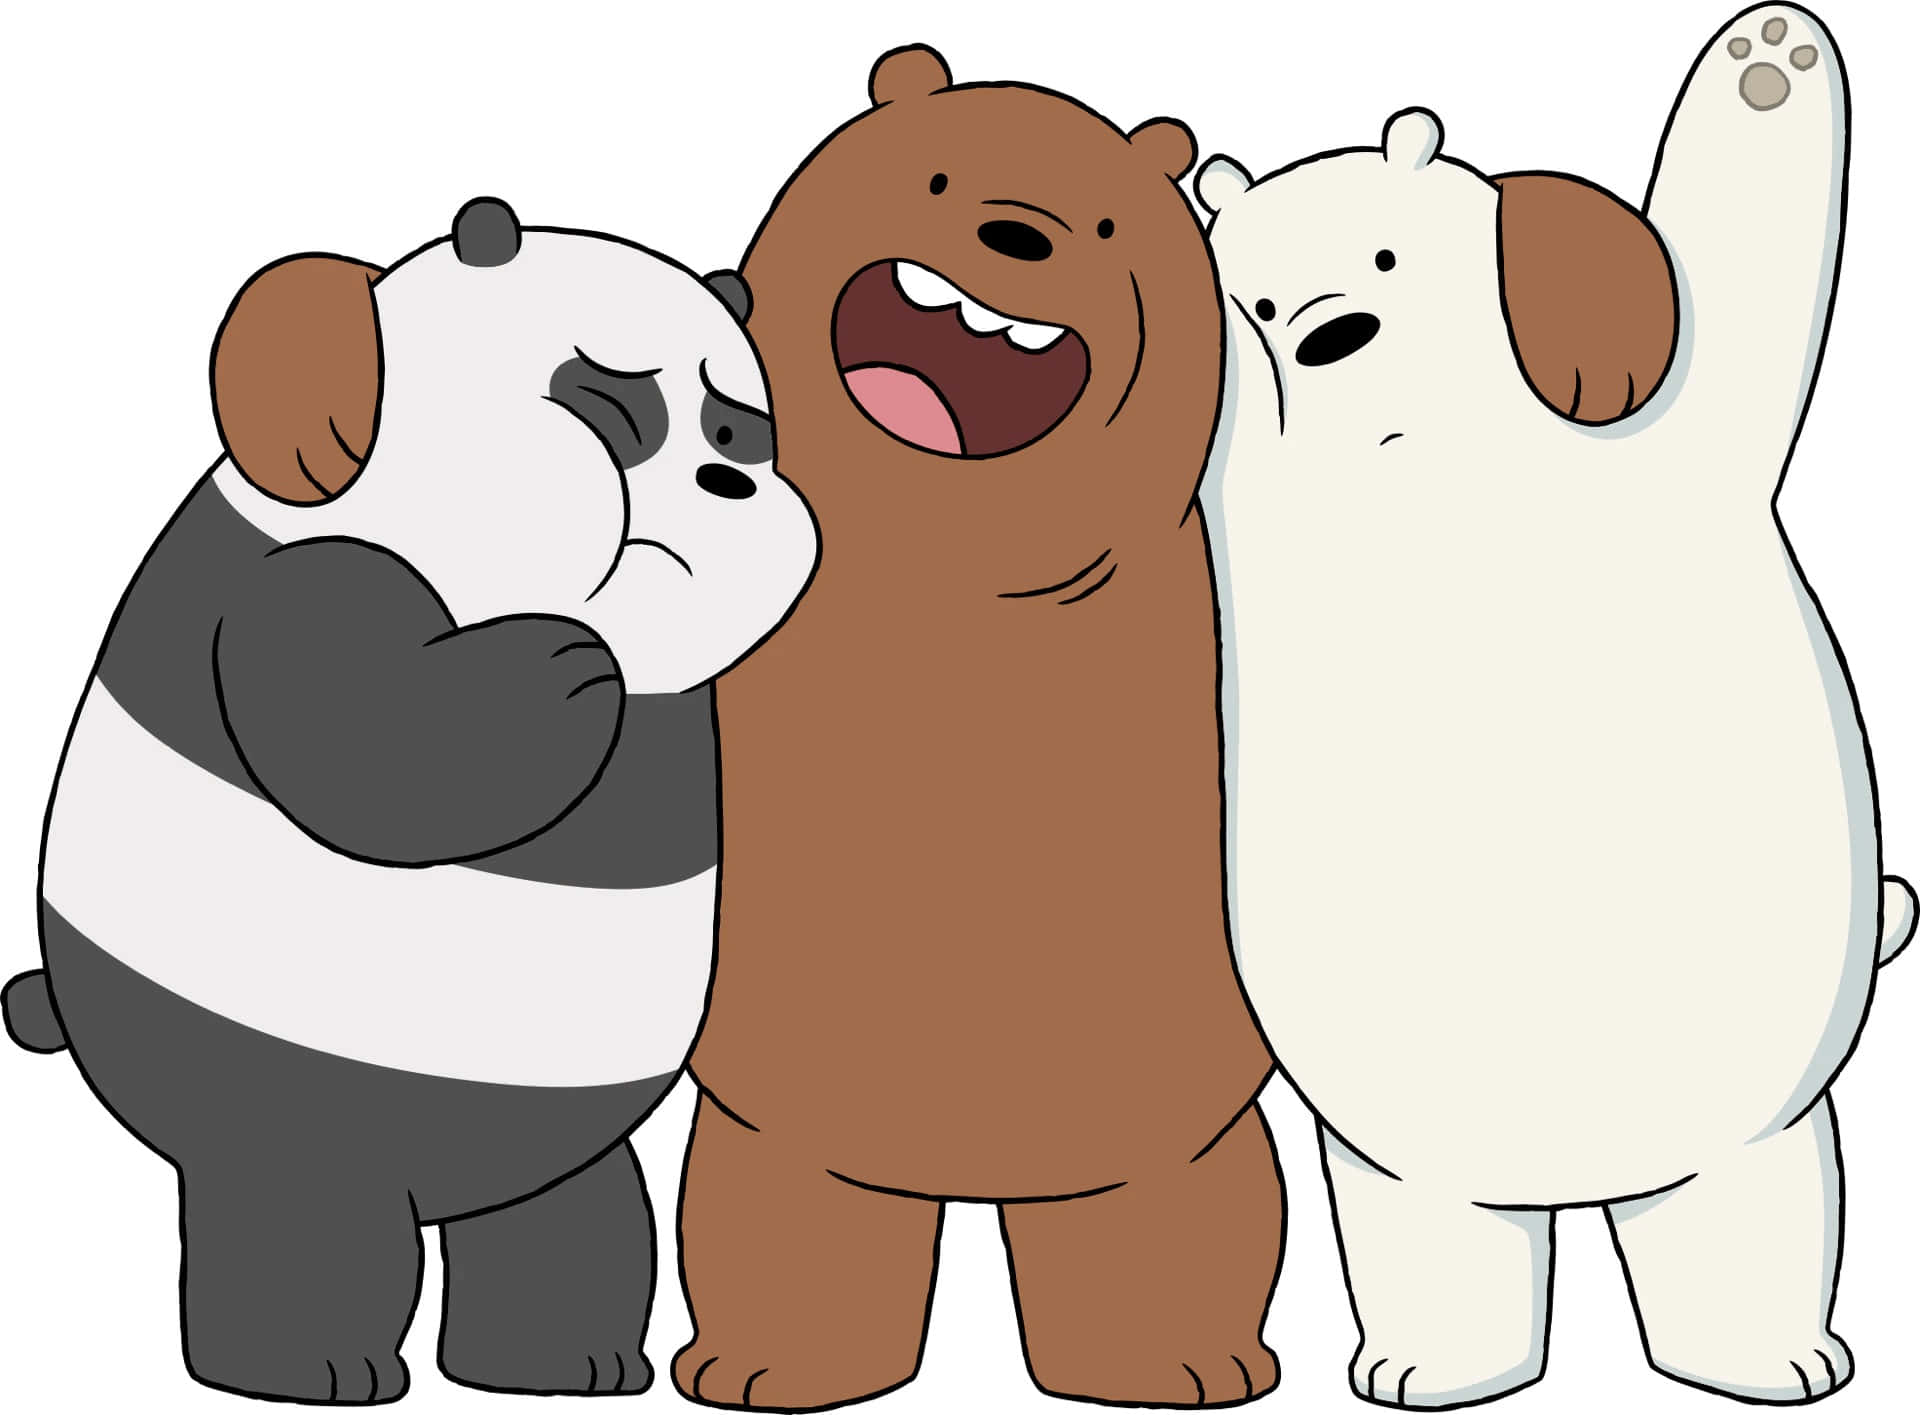 Blivmedlem Af Grizz, Panda Og Icebear, Når De Tager På Eventyr Sammen!